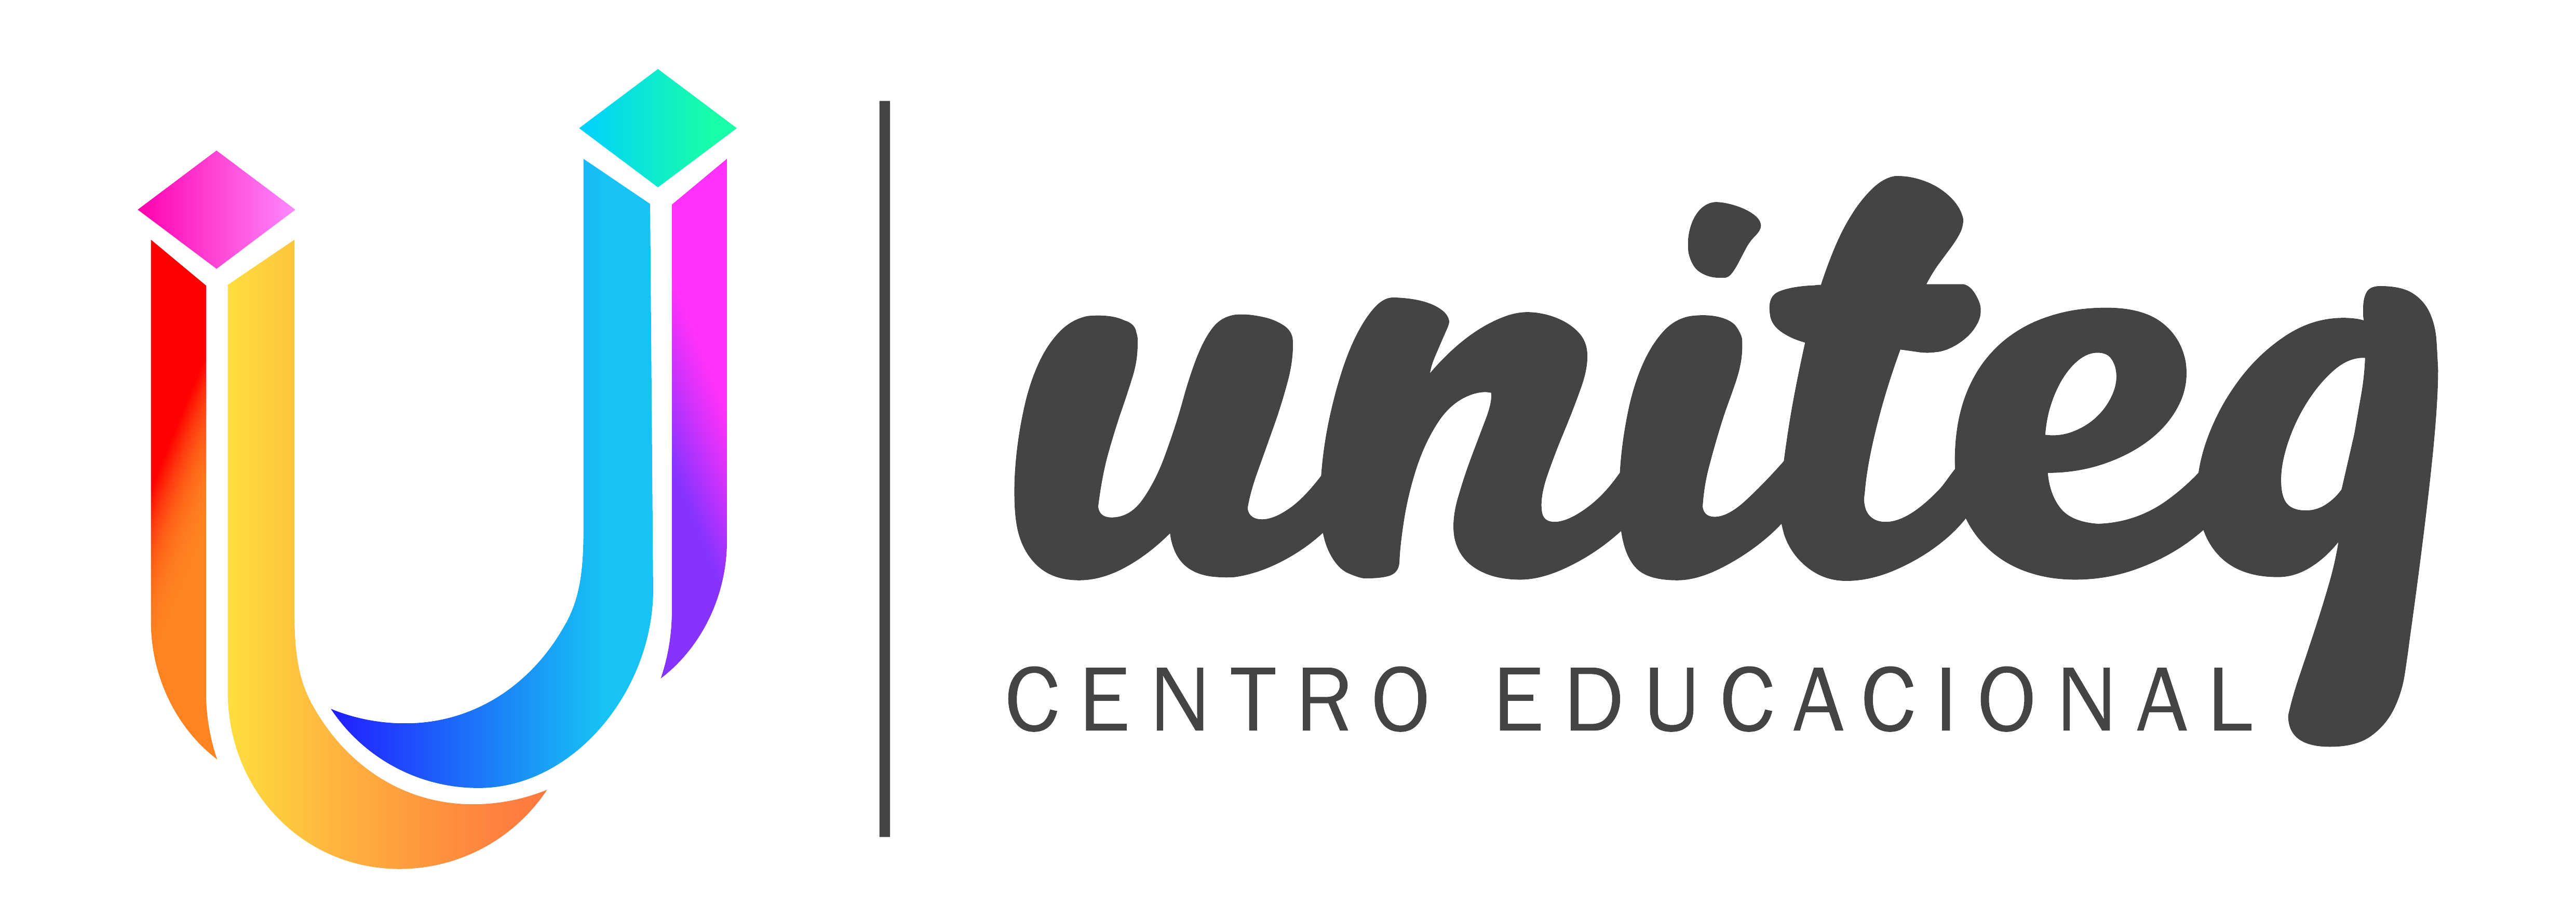 Uniteq - Ambiente Virtual de Aprendizagem